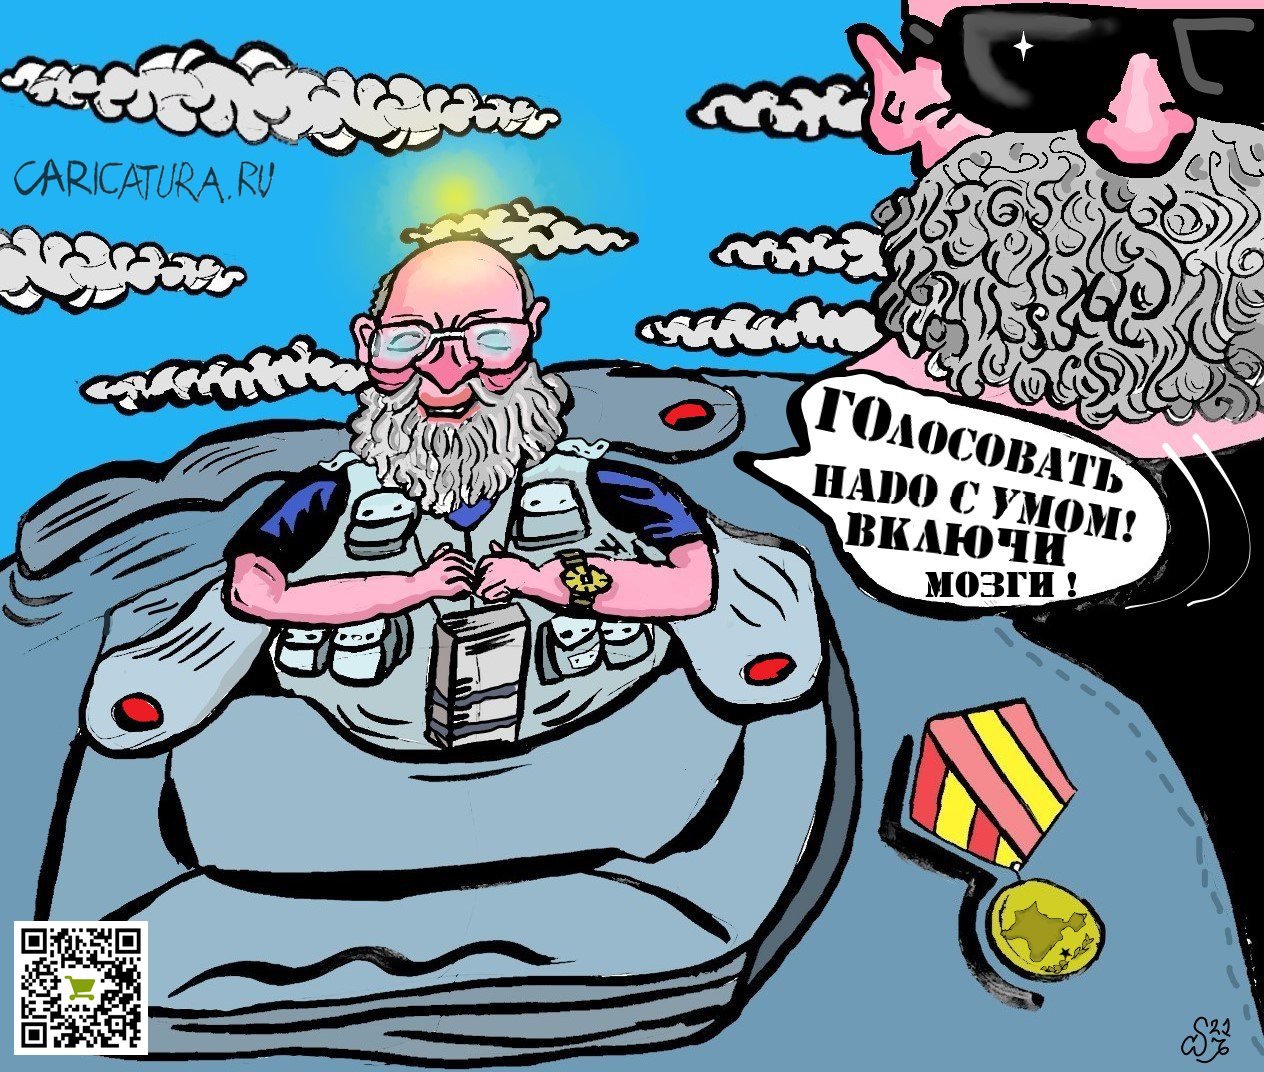 Карикатура "Карманный кандидат, или своя игра", Ипполит Сбодунов